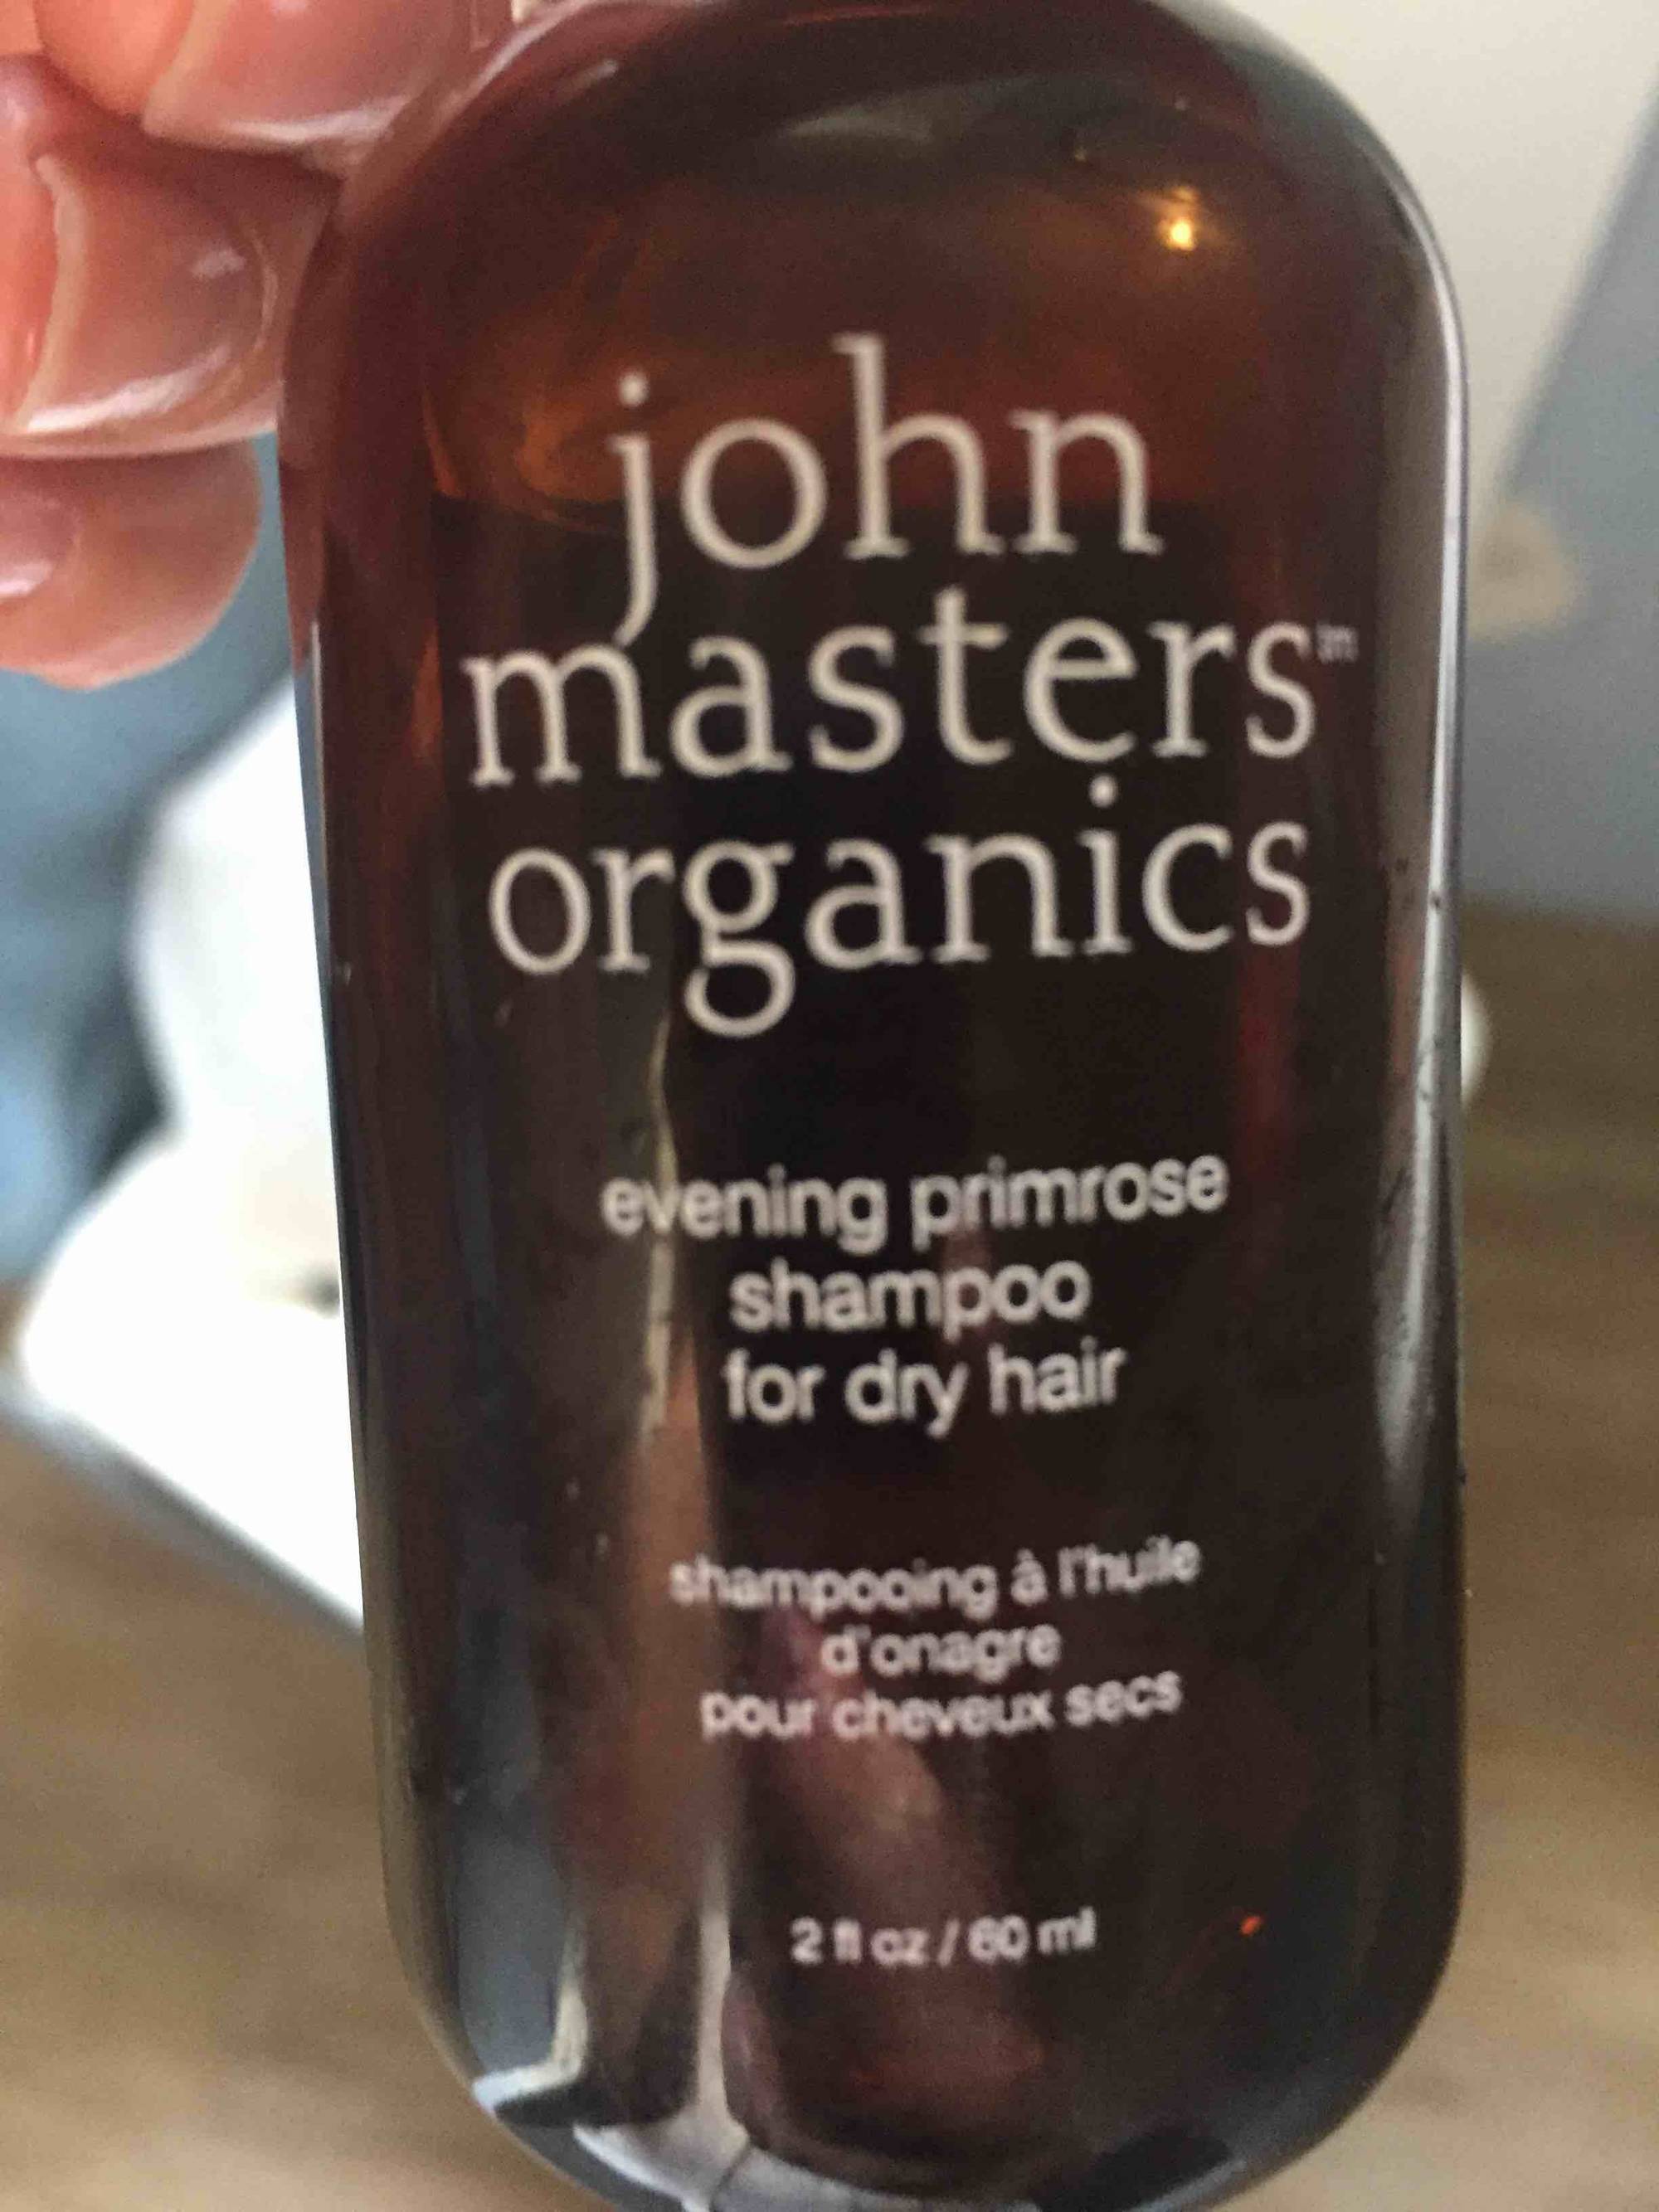 JOHN MASTERS ORGANICS - Shampooing à l'huile d'onagre pour cheveux secs